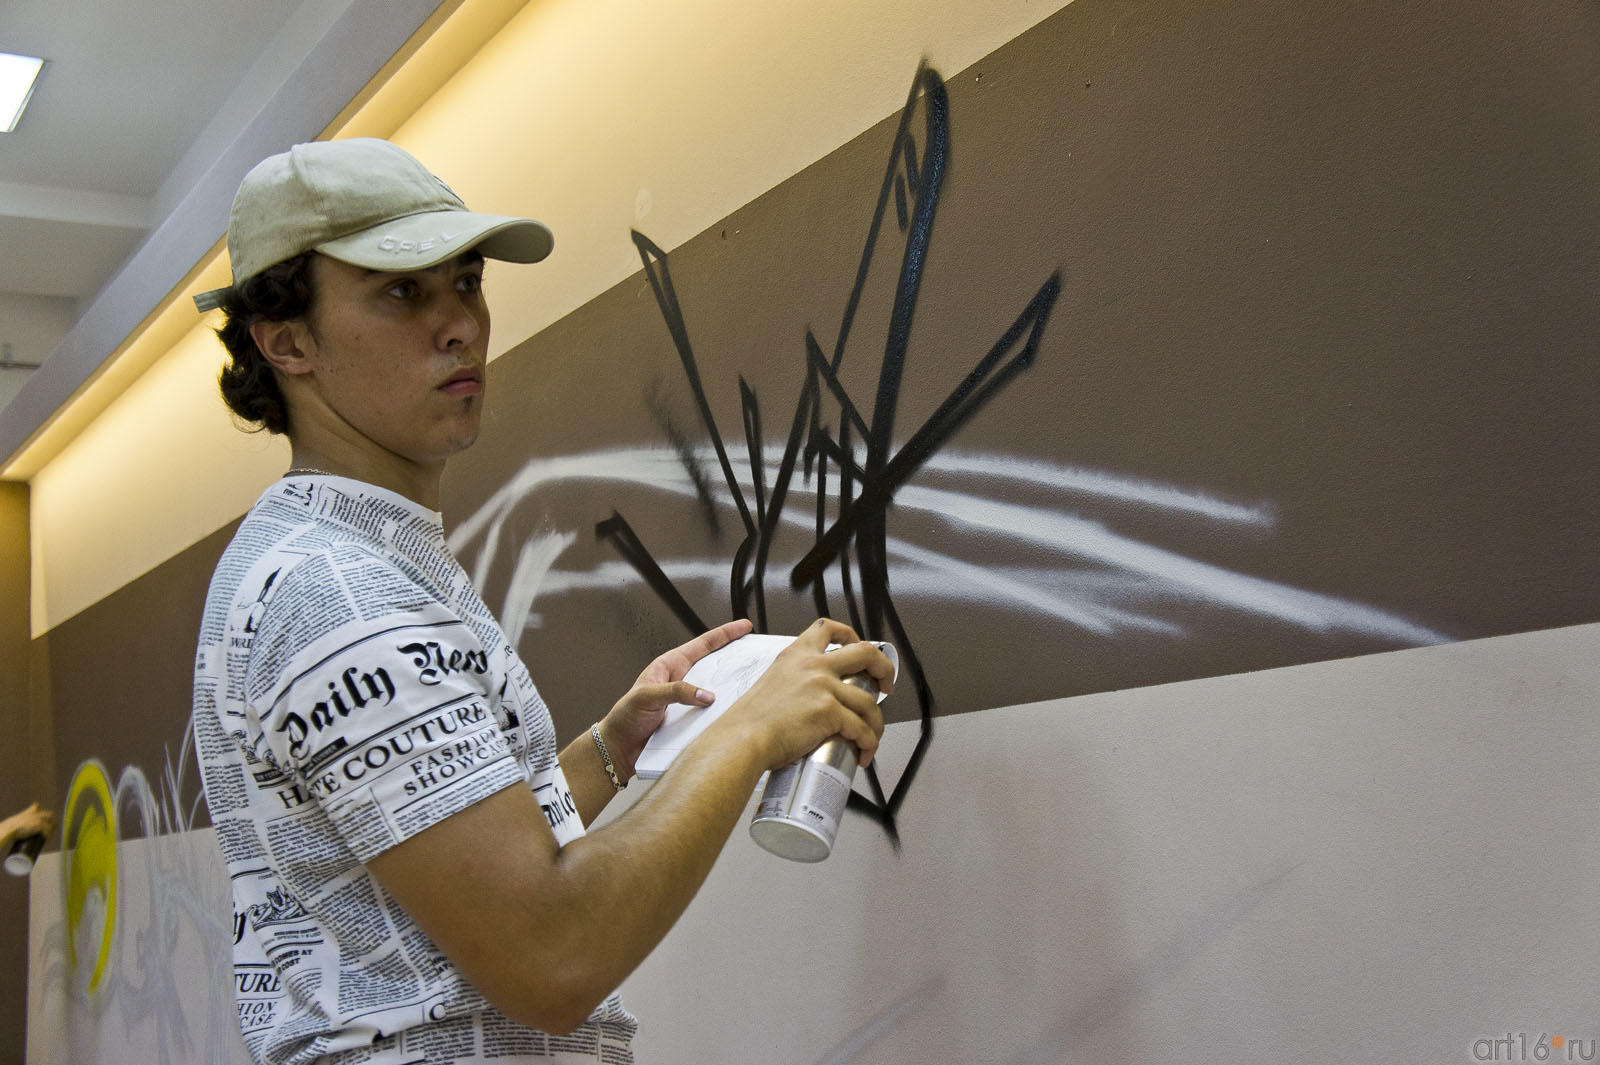 Вова Step::Граффити. Арт-акция «MANEGE Art MAUER» — 2011